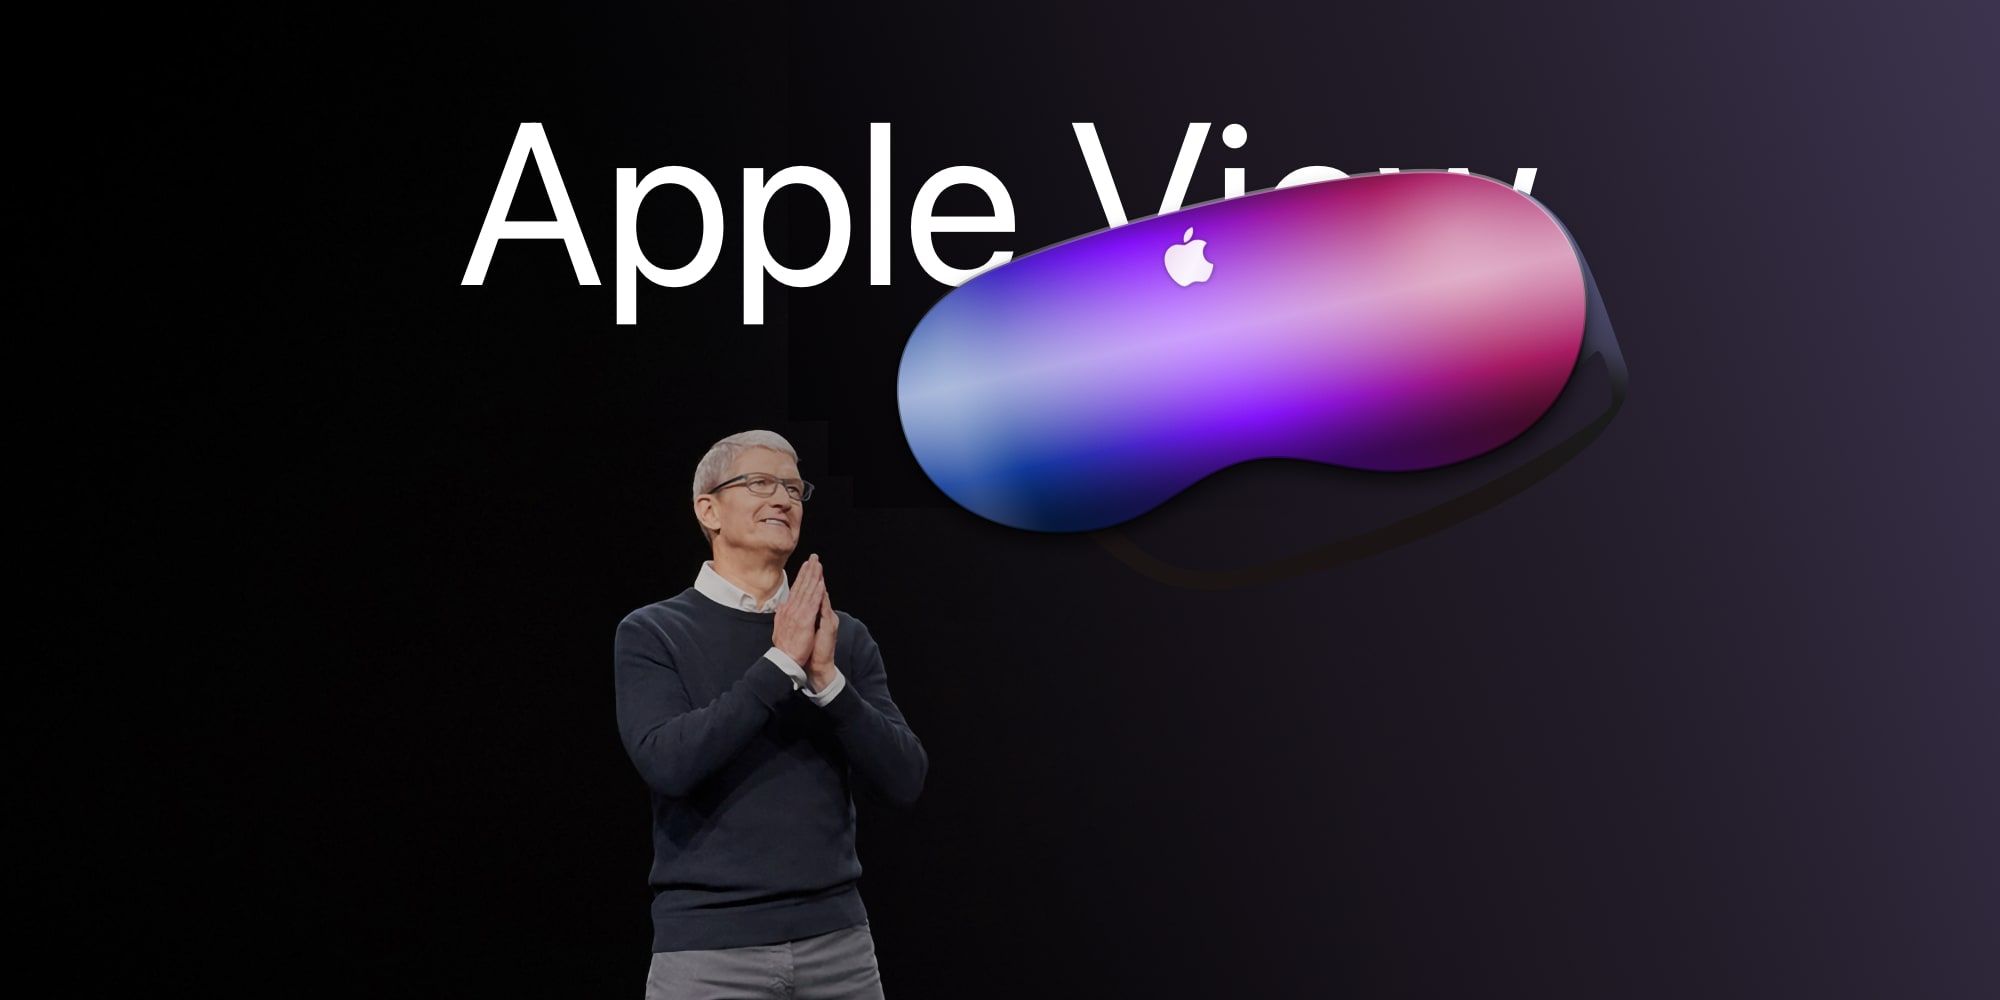 ¿Visión de Apple?  Vista de Apple?  ¿Cómo se llamarán los auriculares AR/VR de Apple?